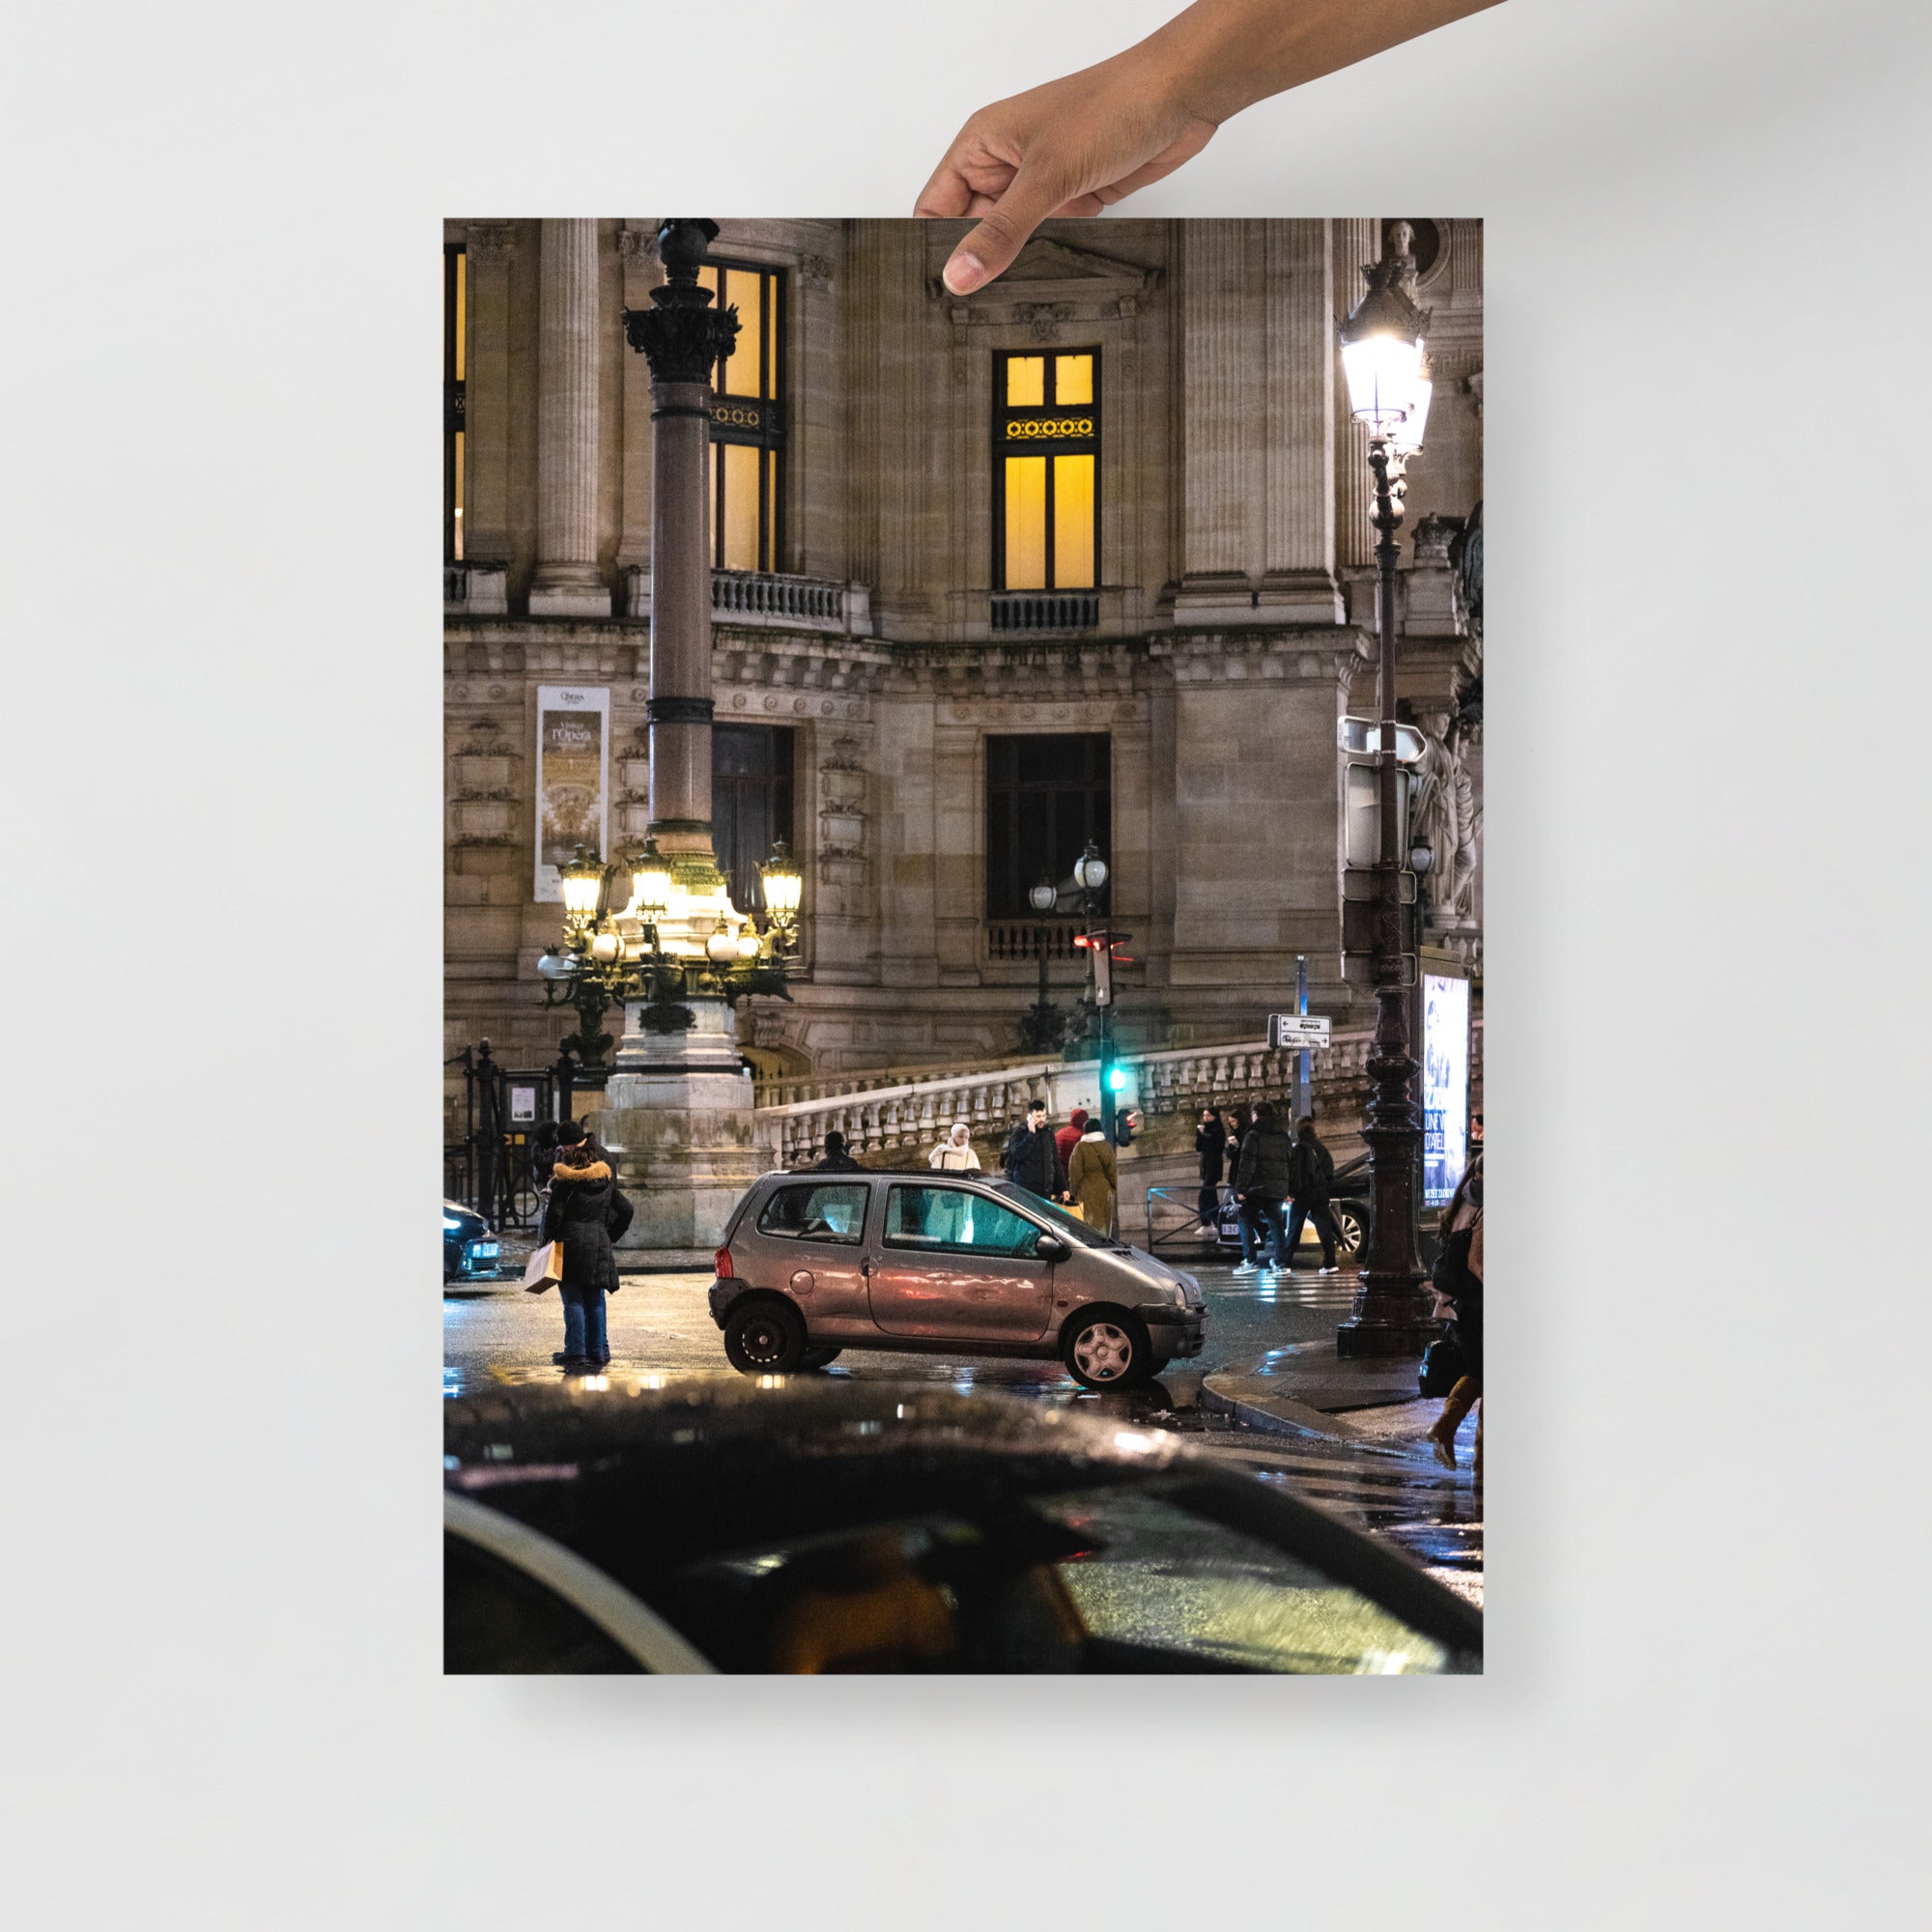 Poster mural - Twingo 1 Opéra – Photographie de voiture – Poster photo, poster XXL, photographie murale et des posters muraux unique au monde. La boutique de posters créée par Yann Peccard un Photographe français.